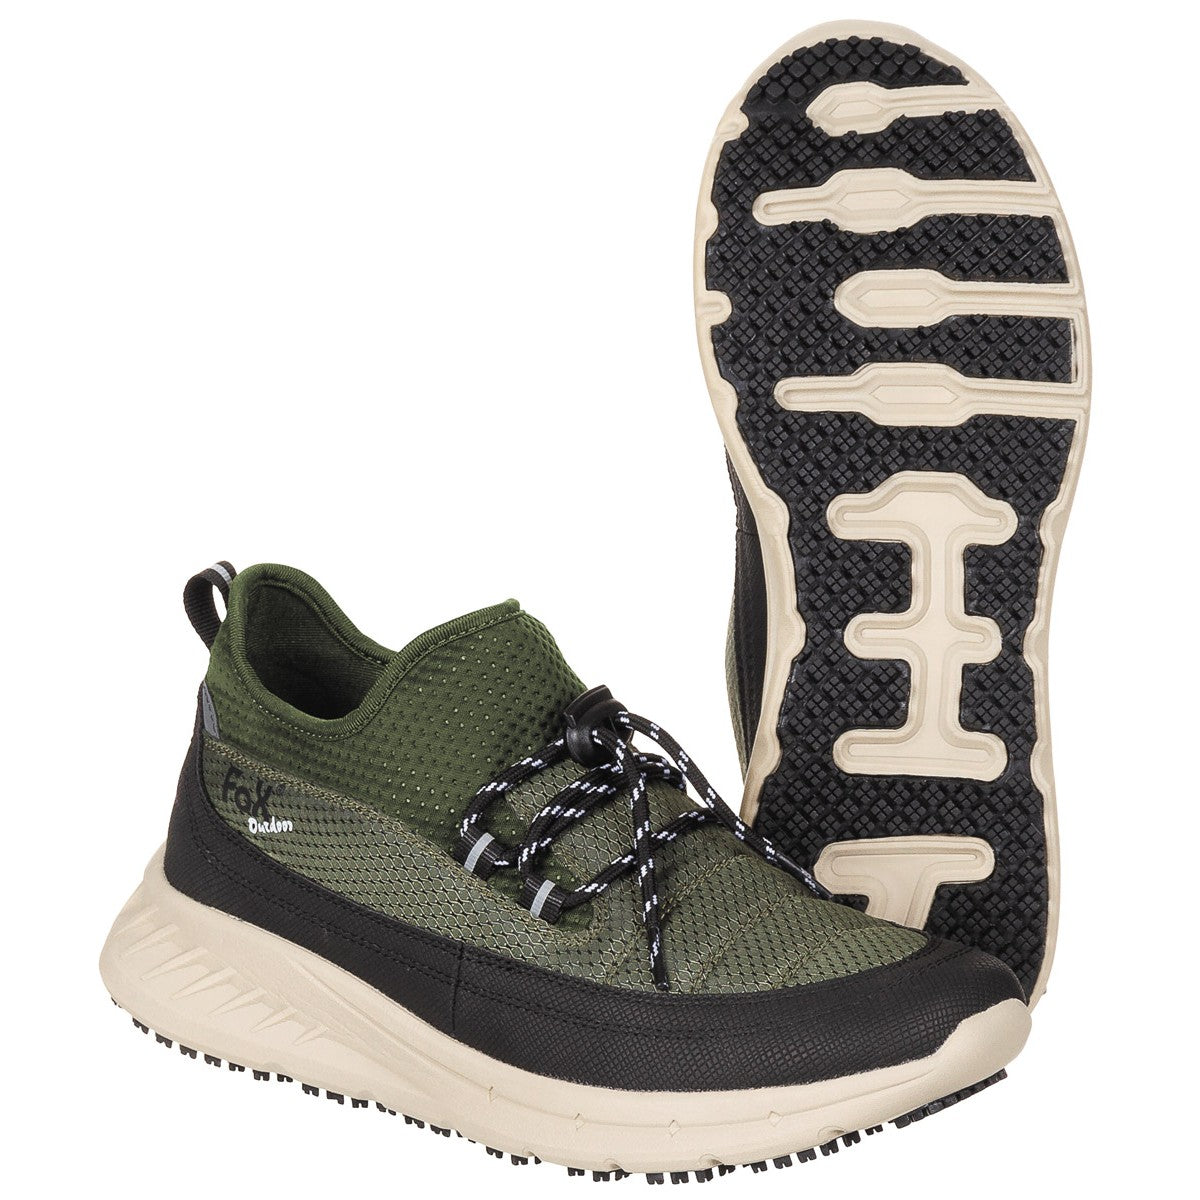 Outdoor Schong, "Sneakers", Oliven